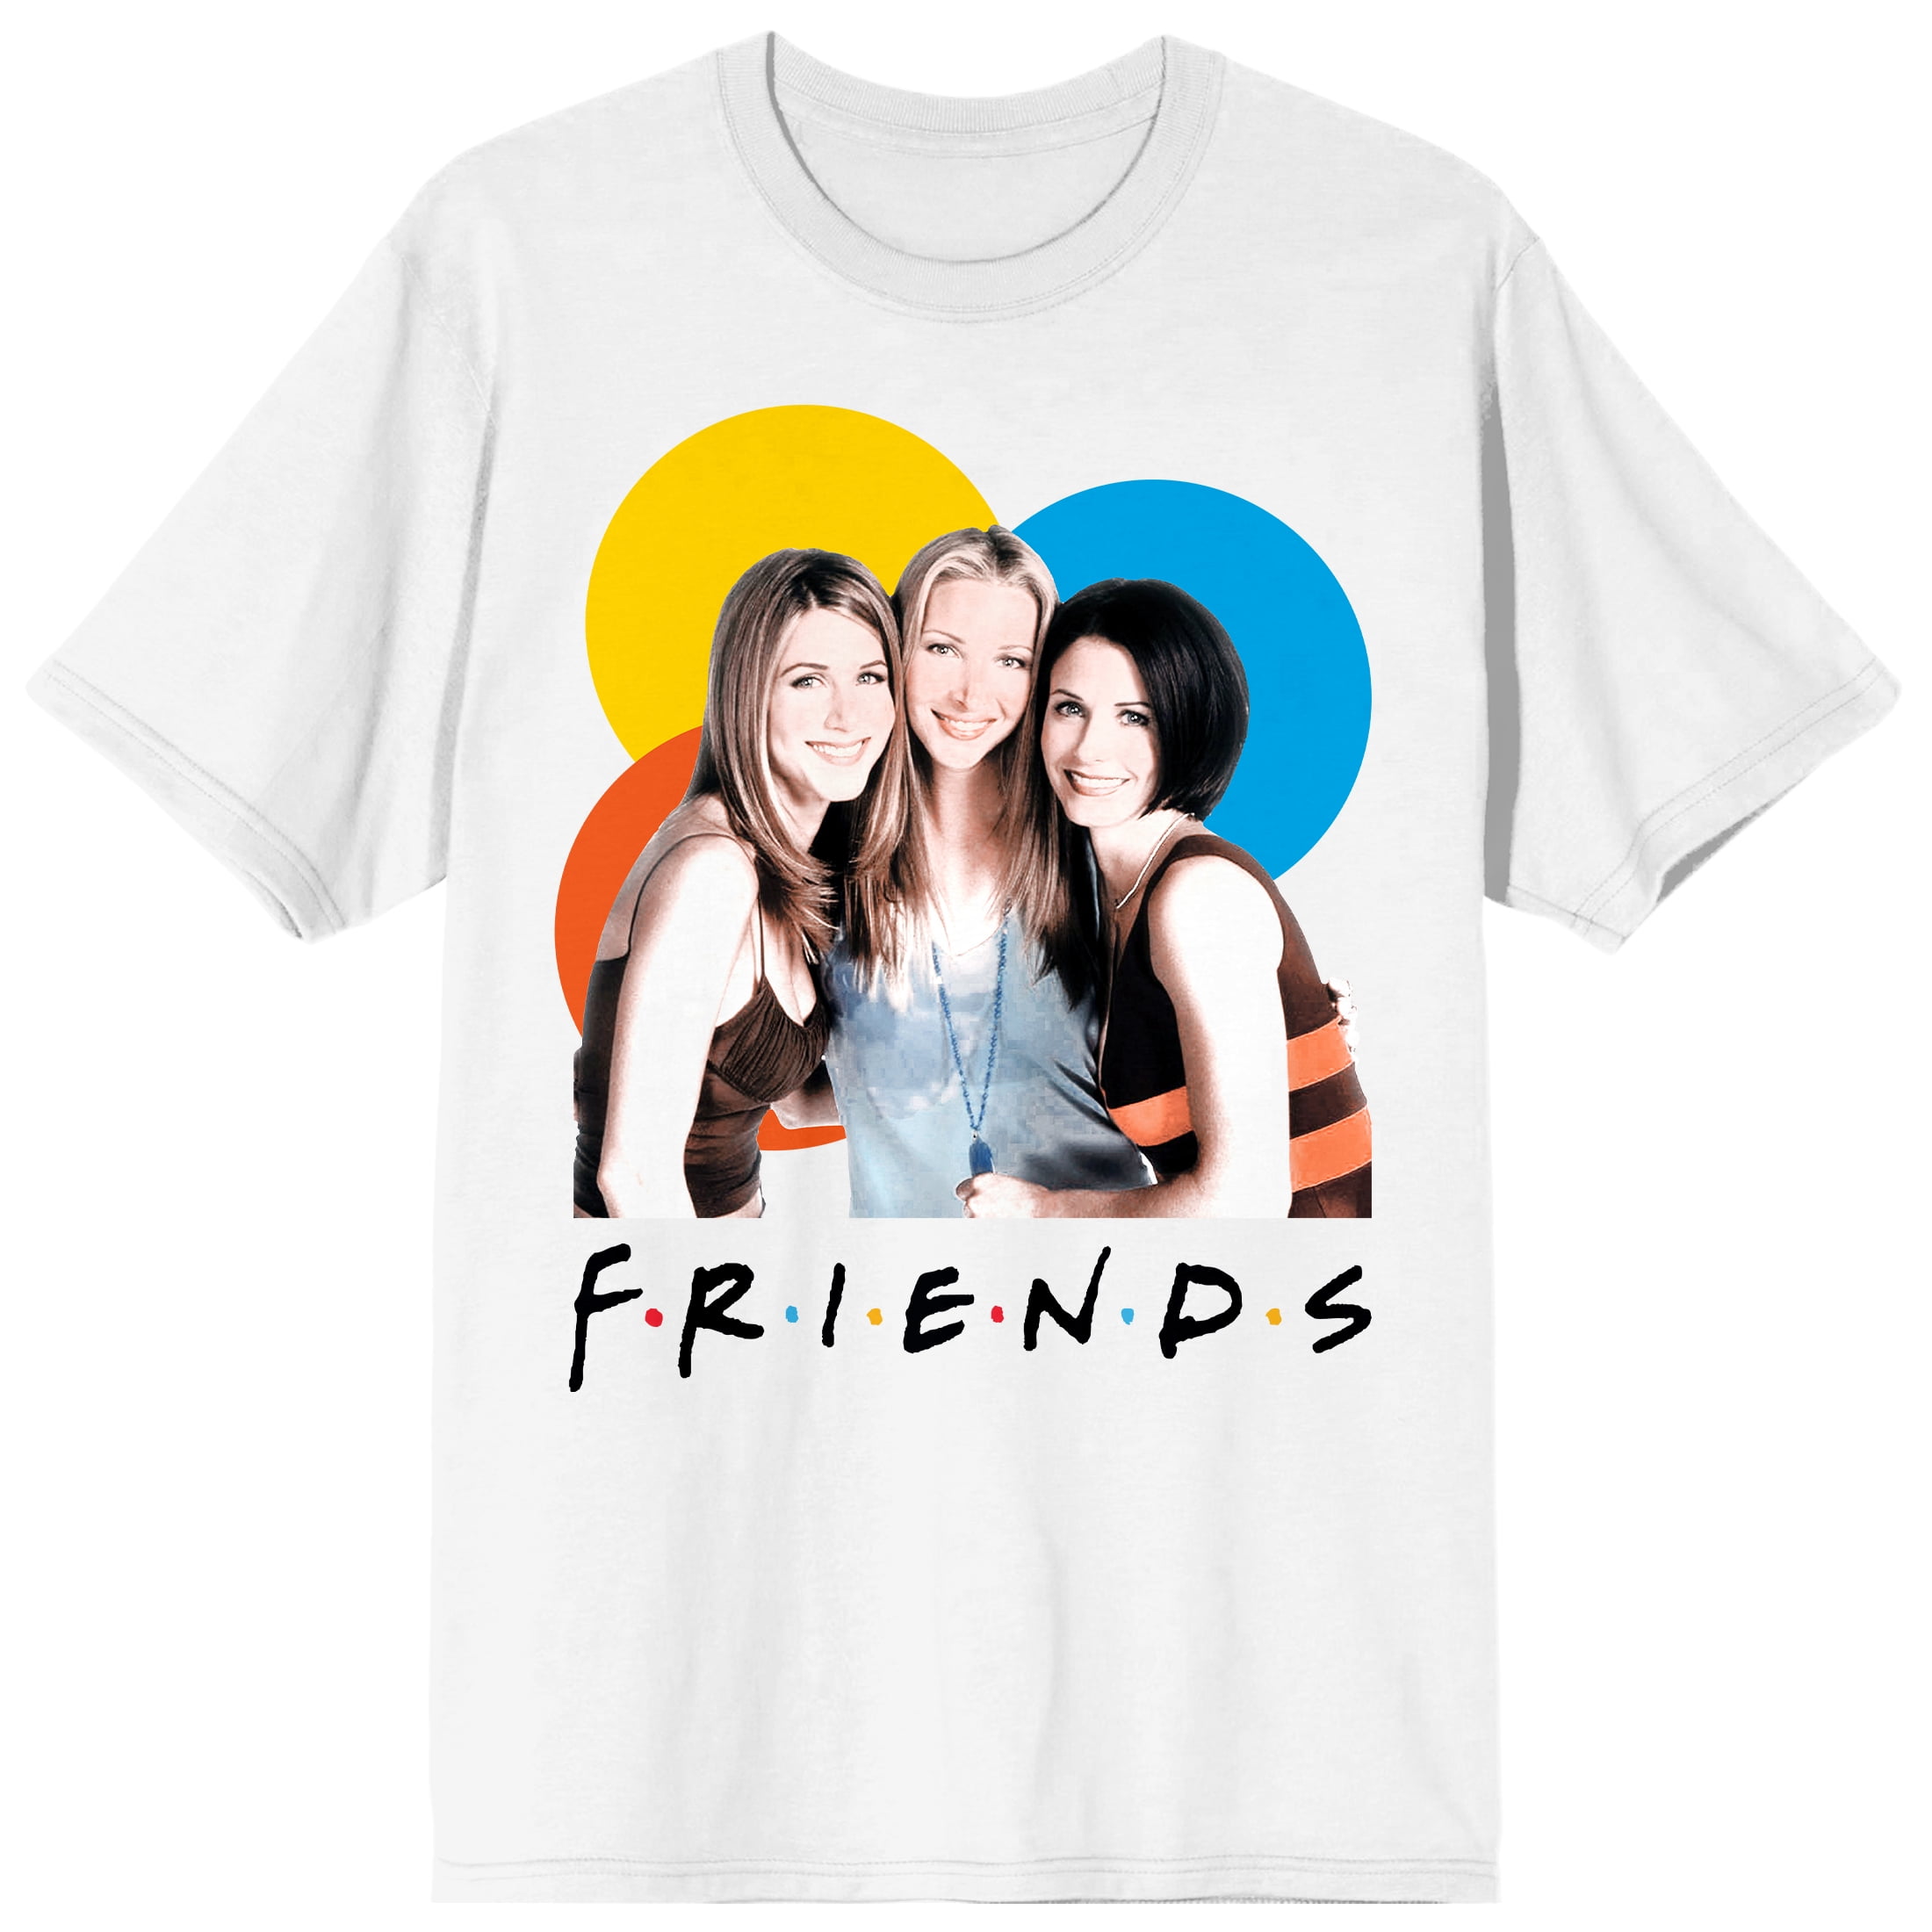 And Rachel Phoebe TV T-shirt-Large Show Monica White Friends Men\'s